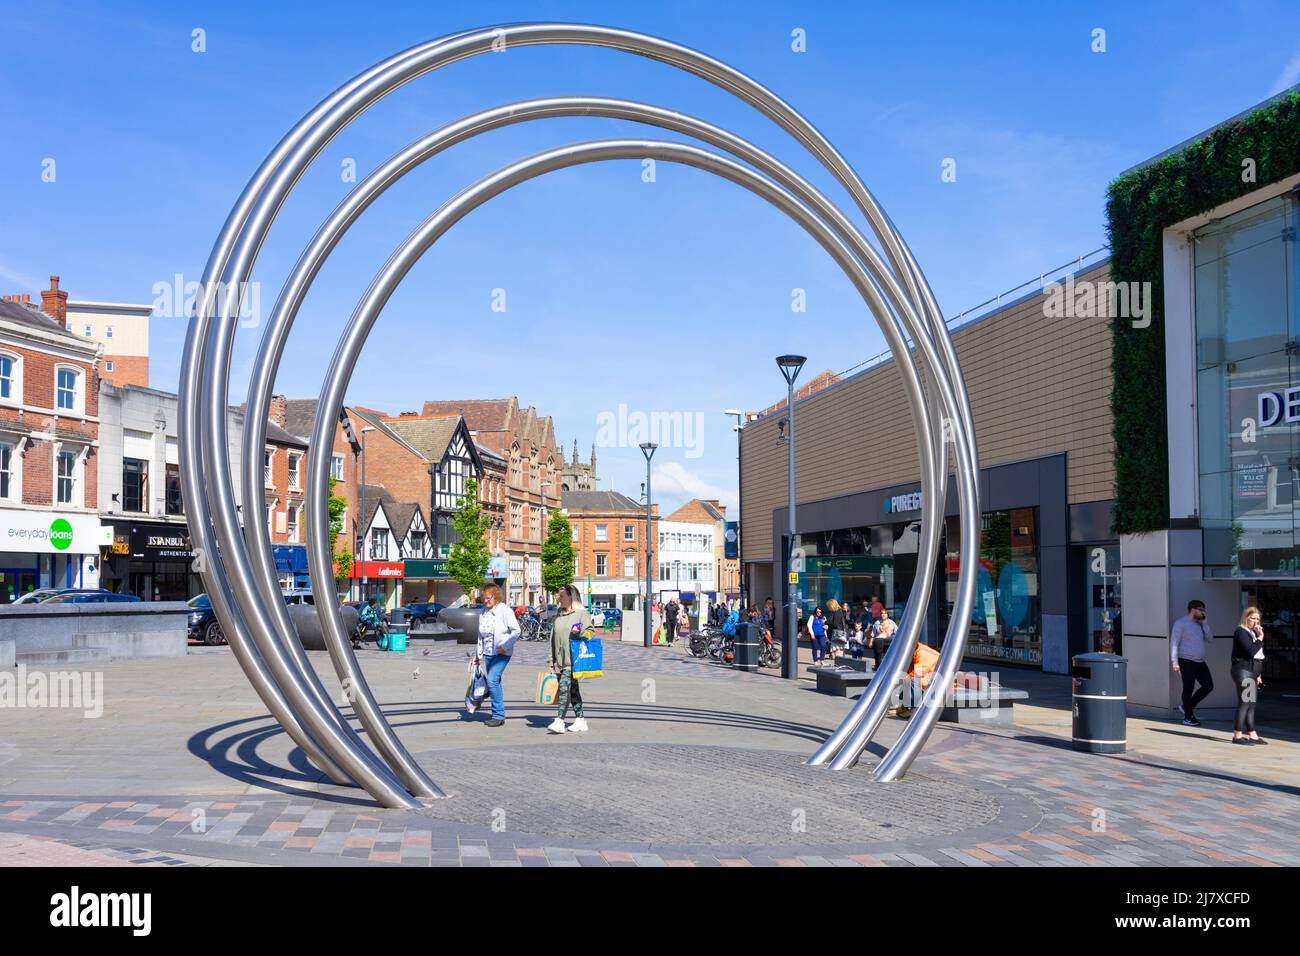 Derby les anneaux de Derby sur la place ou le Derby Slinky métal Hoop sculpture St Peter's Street Derby centre ville Derbyshire Angleterre GB Banque D'Images